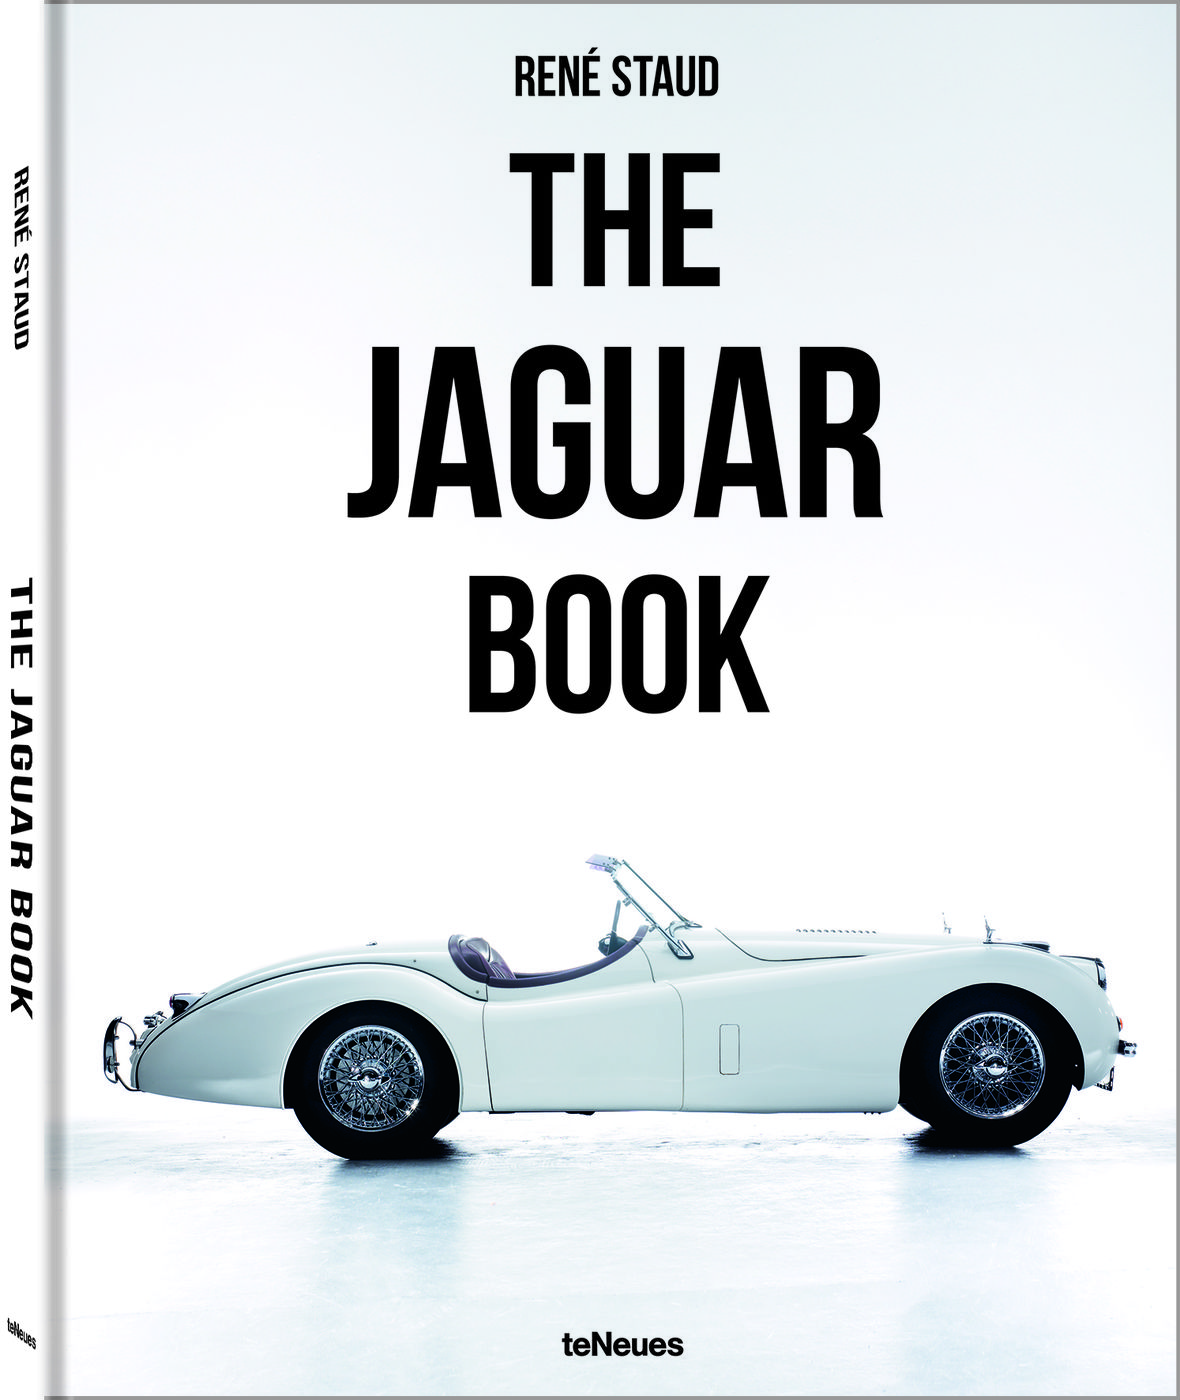 The Jaguar Book
The Jaguar Book
The Jaguar Book